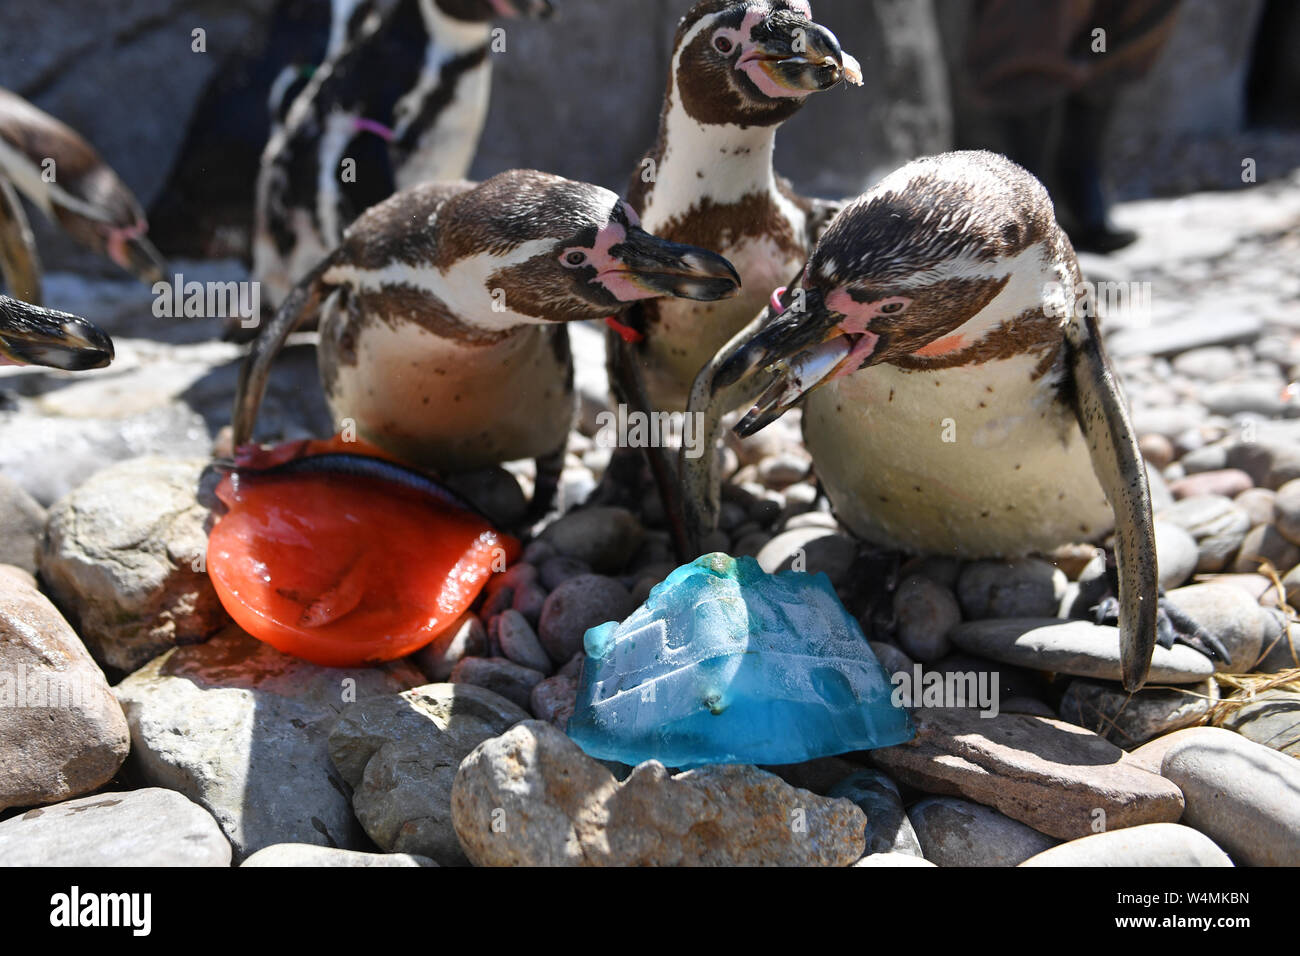 Pinguine in der West Midlands Safari Park Abkühlen mit Makrelen aromatisiert Eis. Das Vereinigte Königreich ist versteifung selbst für das, was seiner heißesten je Tag am Donnerstag werden könnte, nach dem Gewitter Brände und Schiene Unterbrechung ausgelöst. Stockfoto